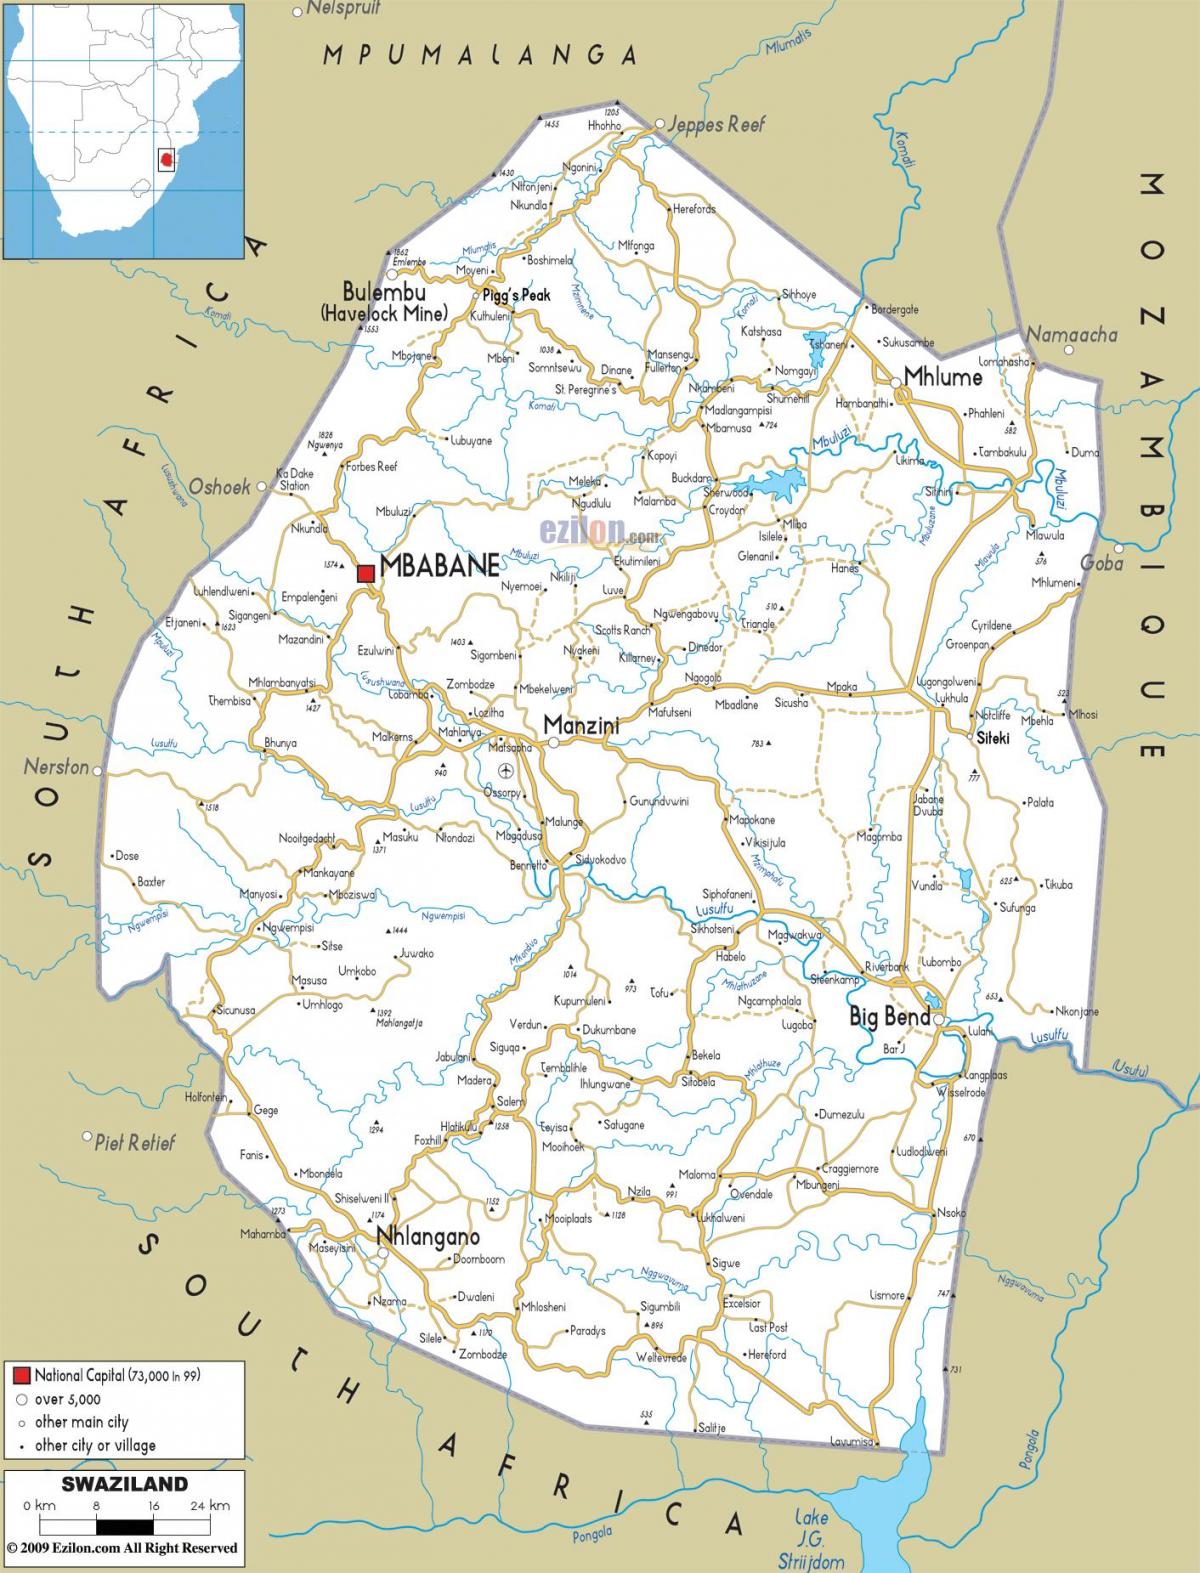 ang mapa ng Swaziland